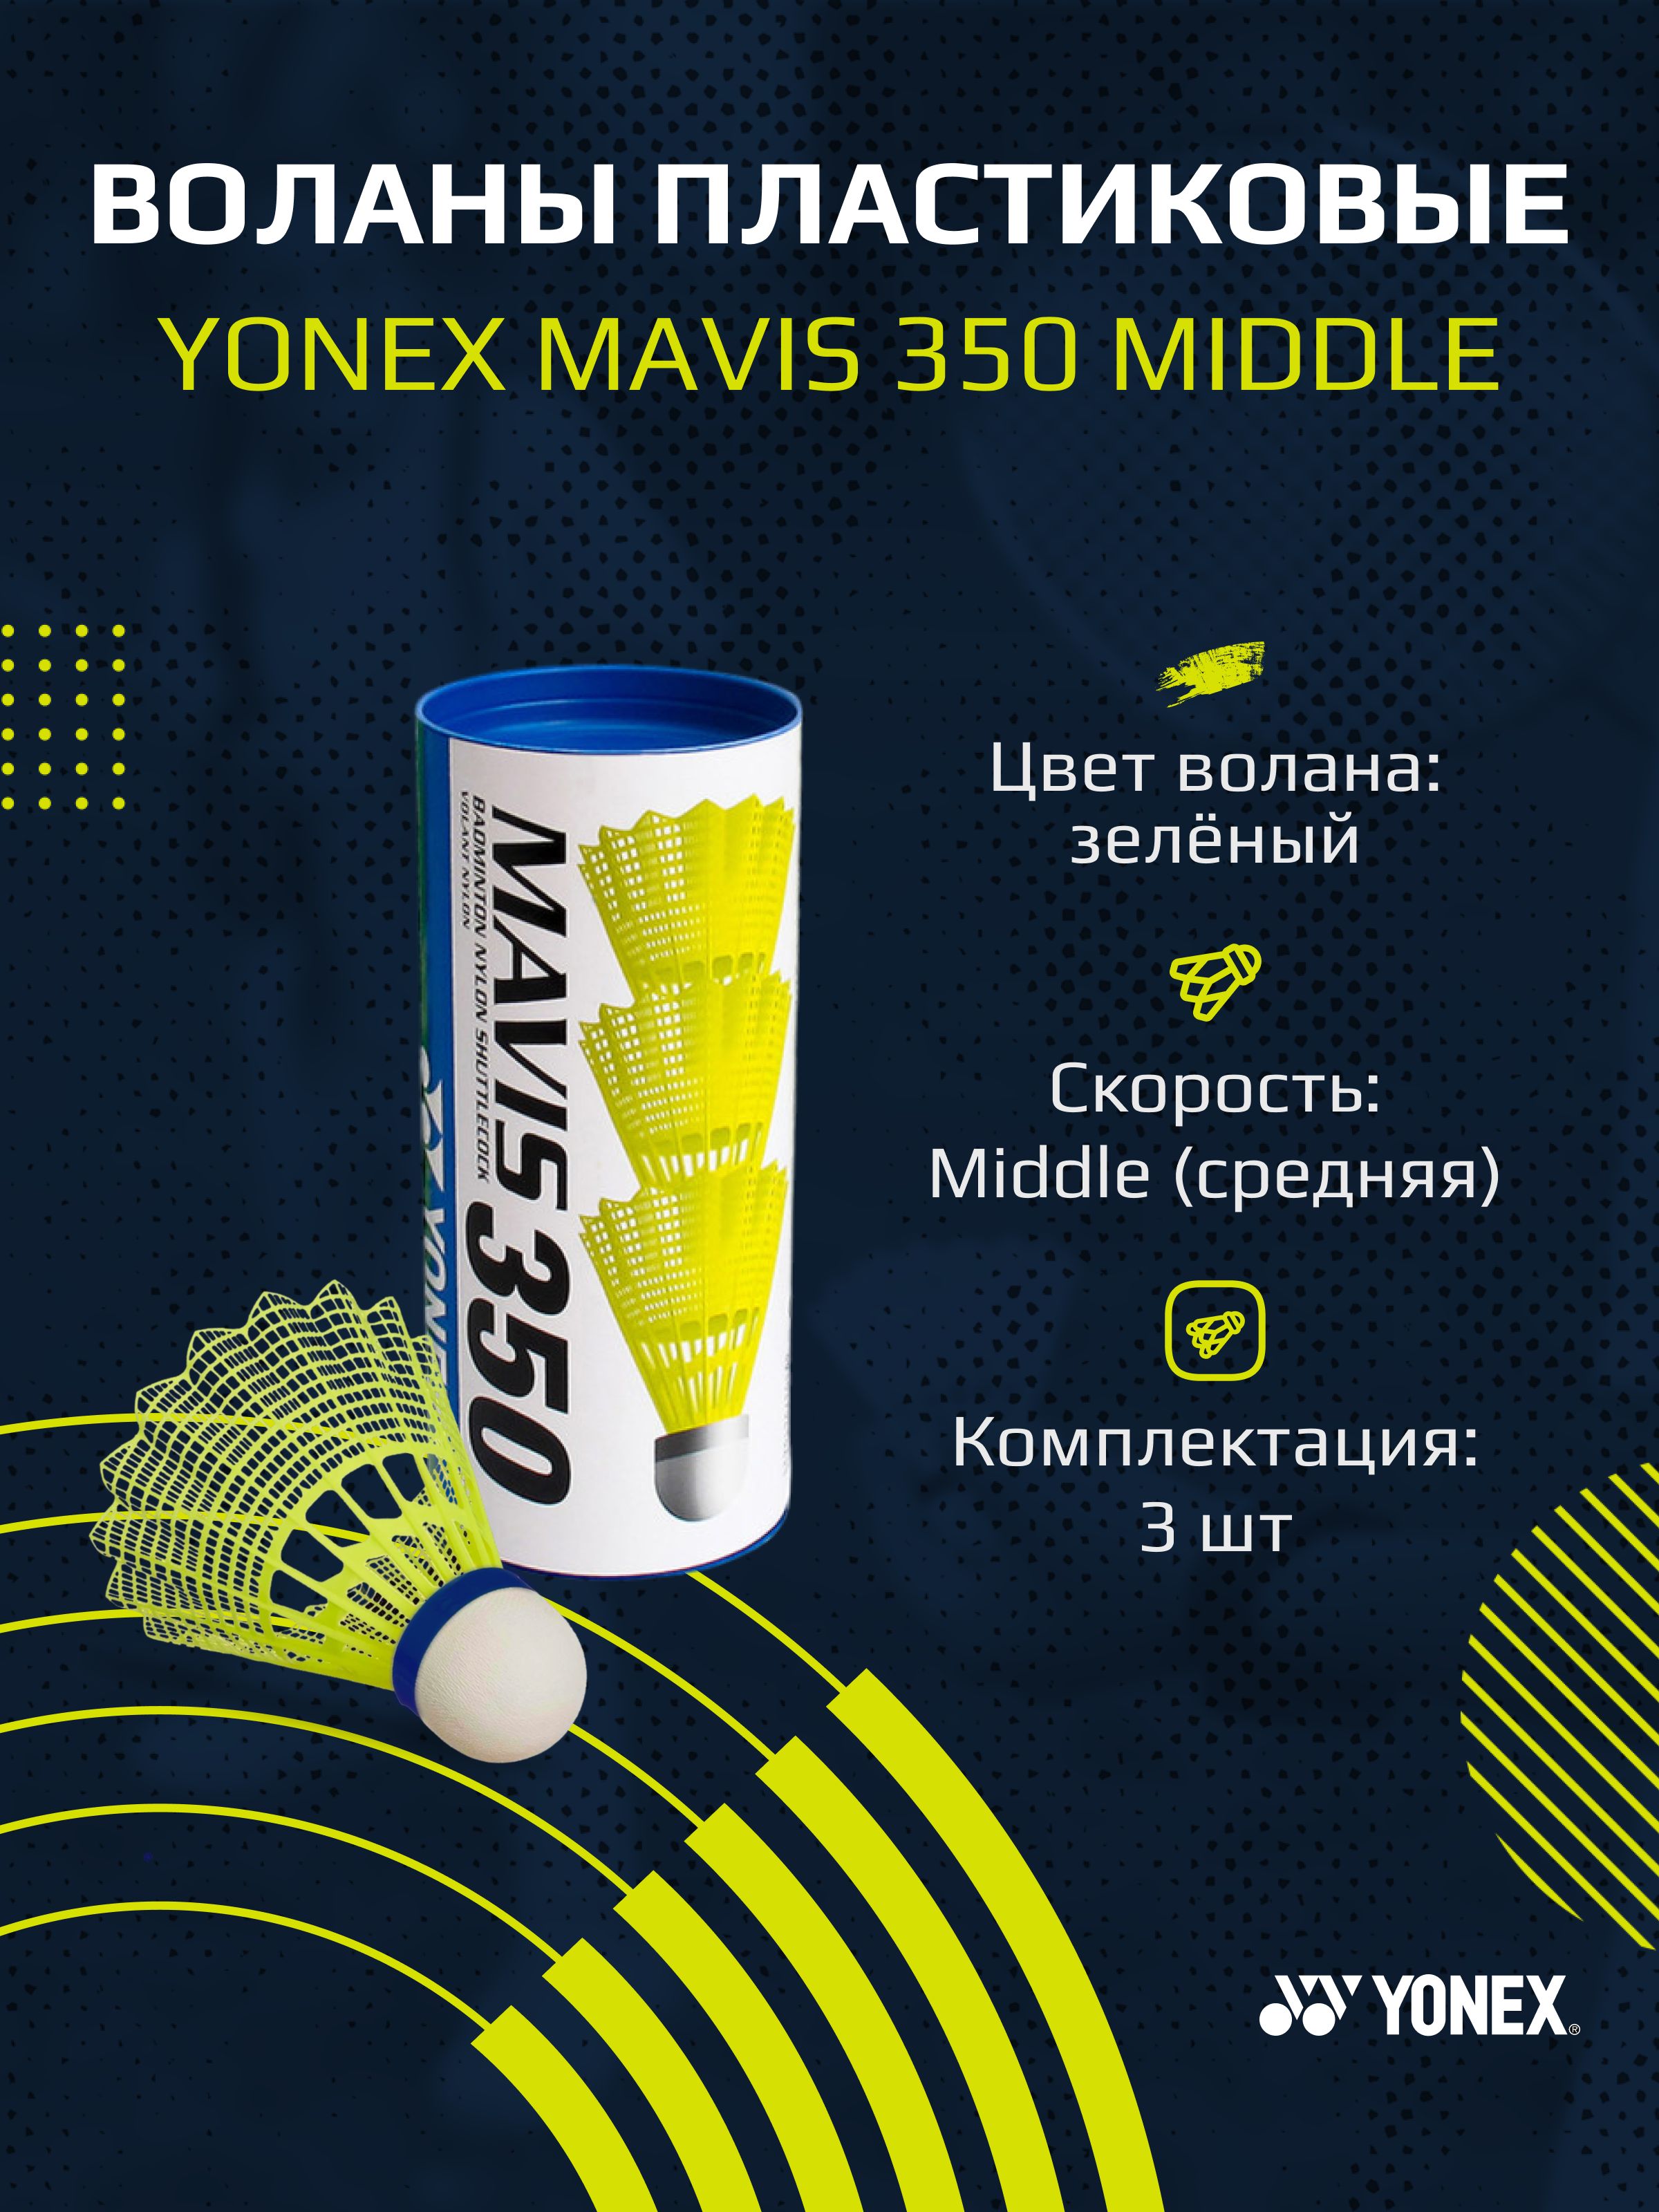 Воланы для бадминтона пластиковые Yonex Mavis 350 - 3шт. (Middle)